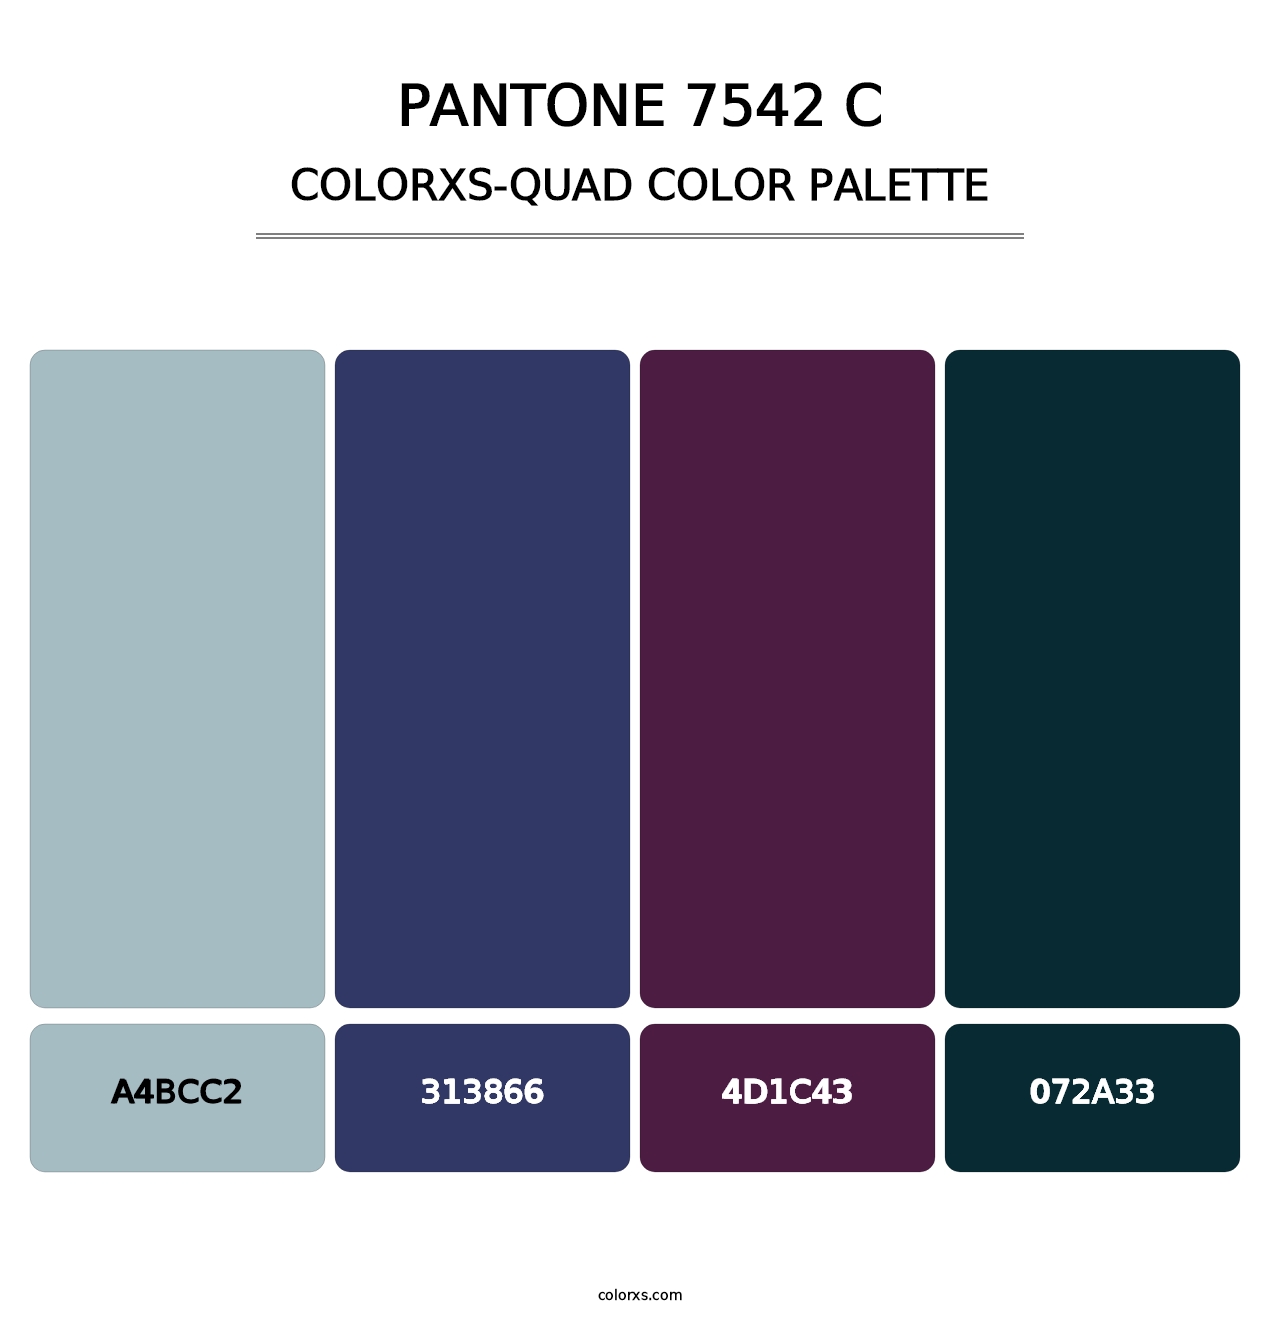 PANTONE 7542 C - Colorxs Quad Palette